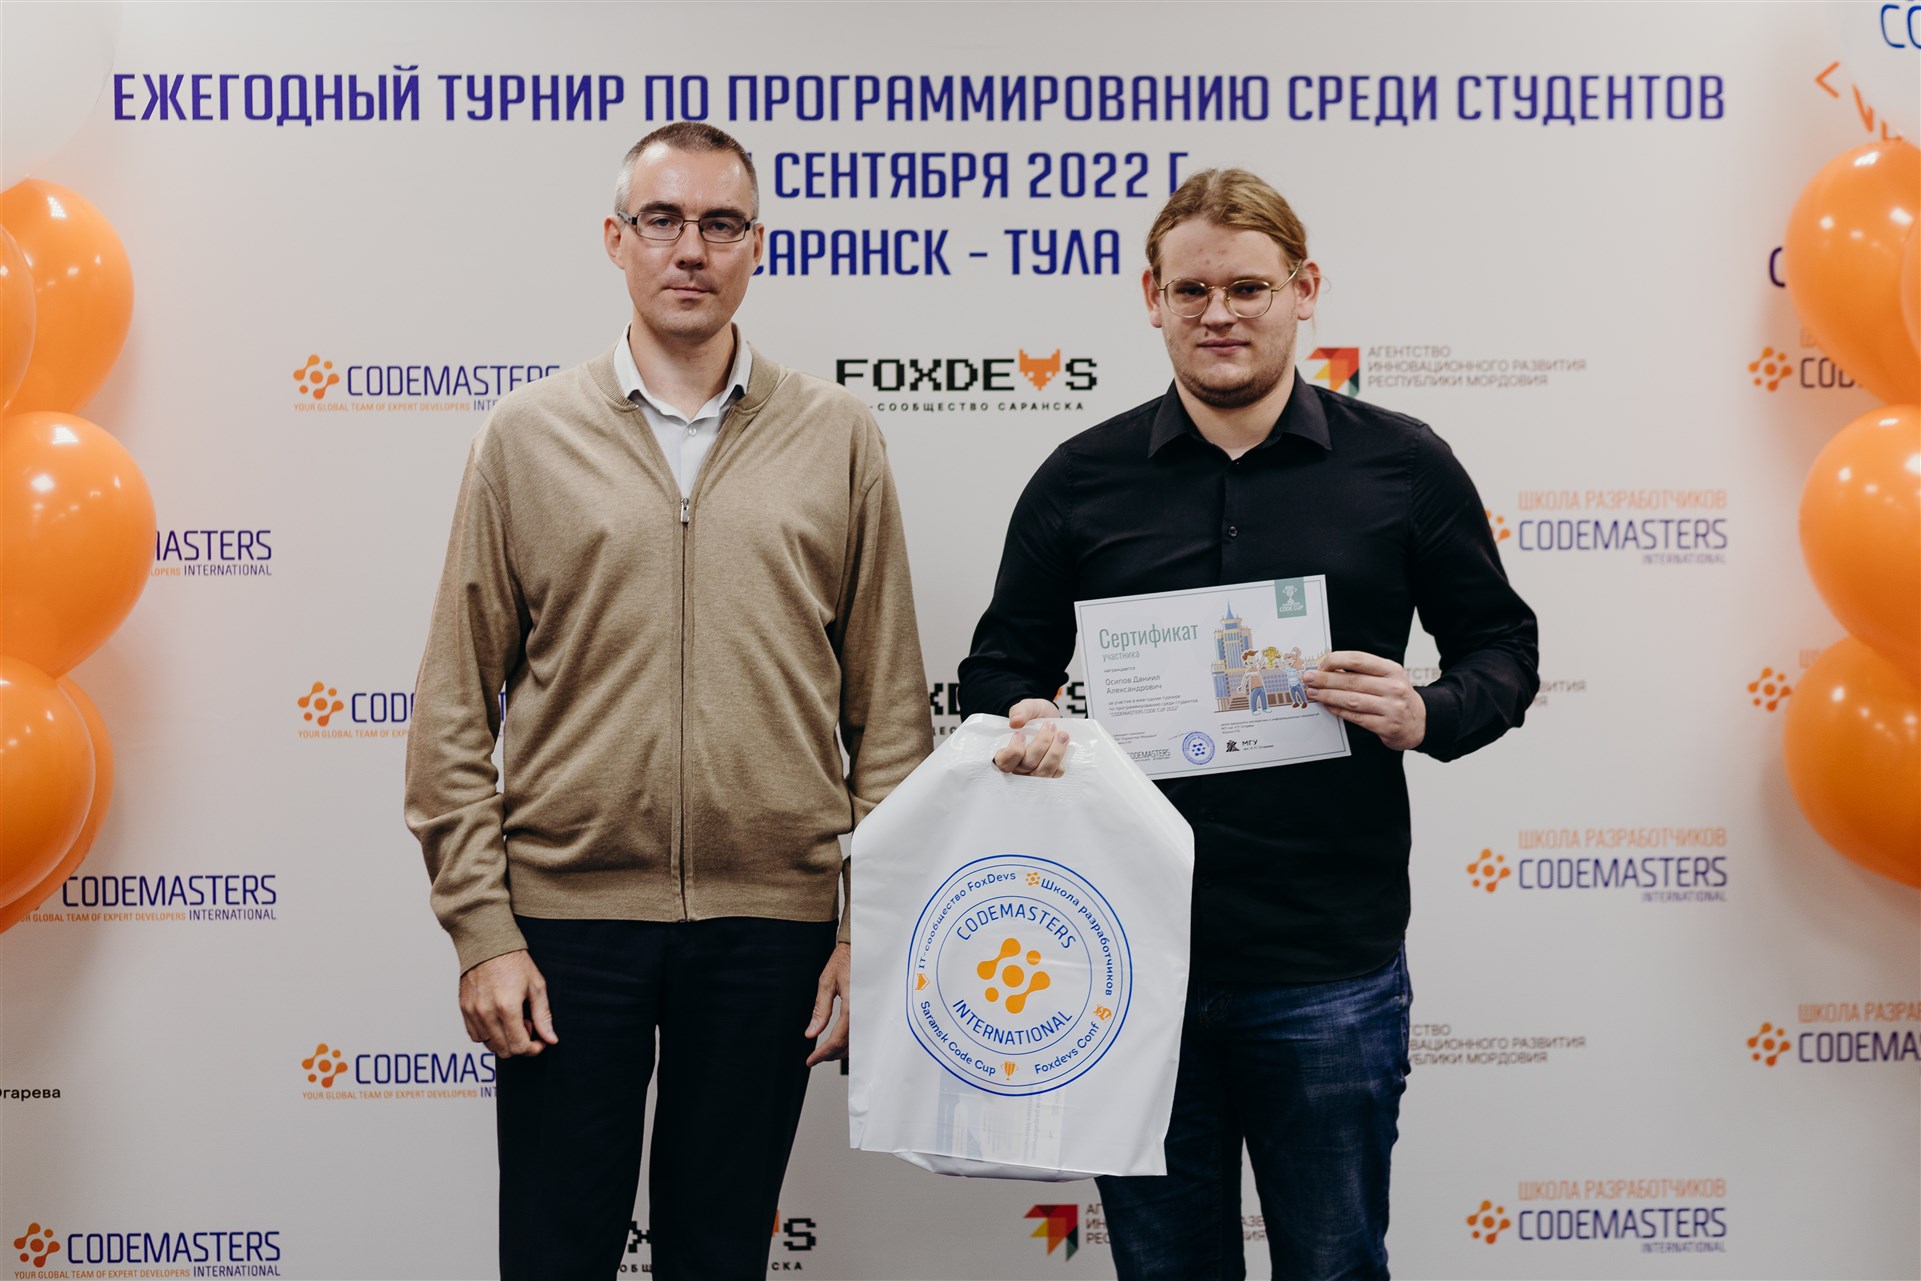 Codemasters Code Cup Саранск 2022 - 12